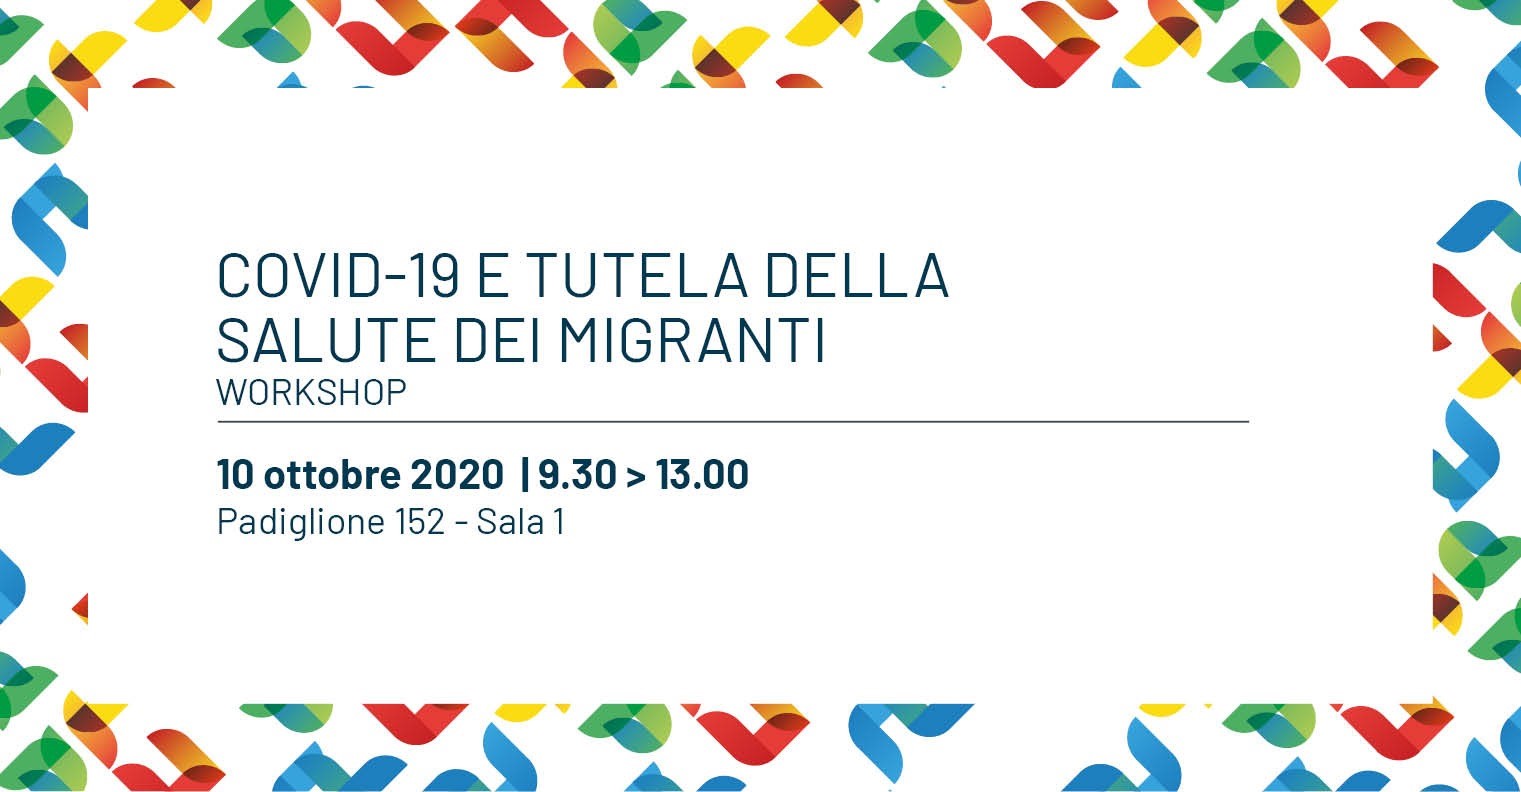 “Covid-19 e tutela della salute dei migranti”, sabato il workshop in Fiera del Levante